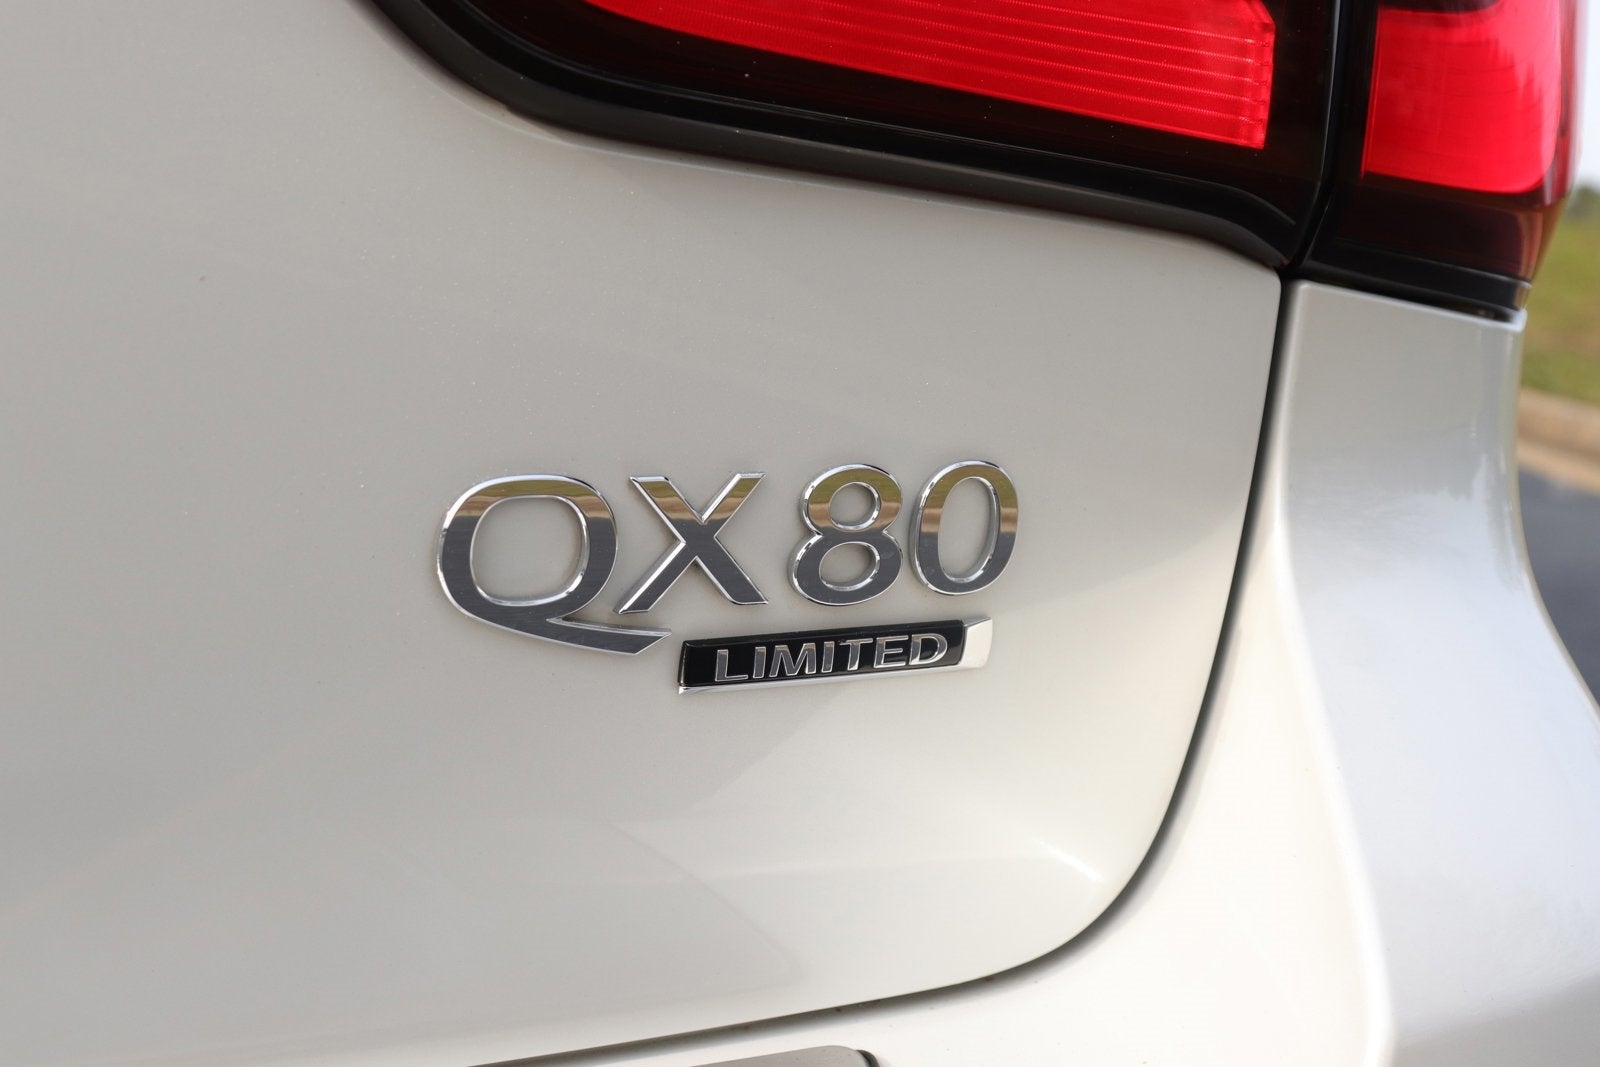 2020 INFINITI QX80 LIMITED